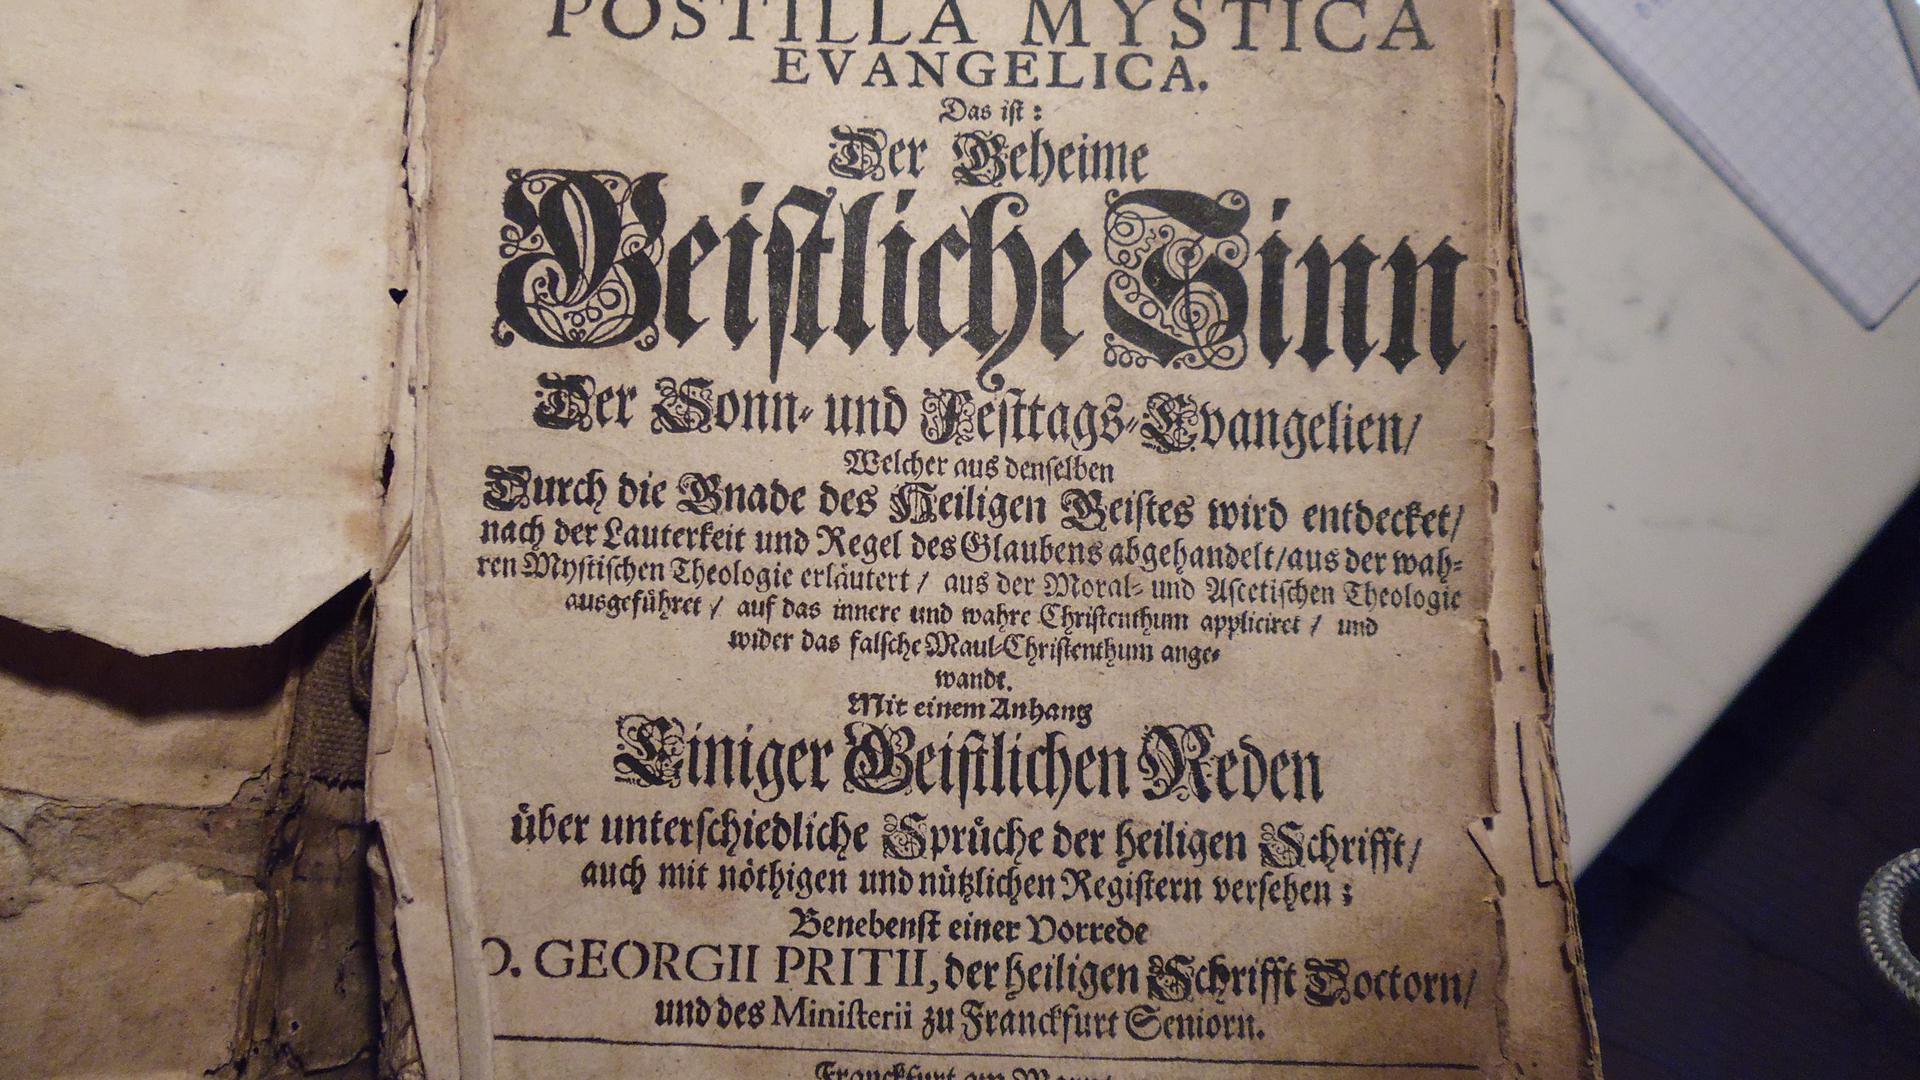 Innere Titelseite des Predigtbuches.
Foto: Detlef Brötzmann